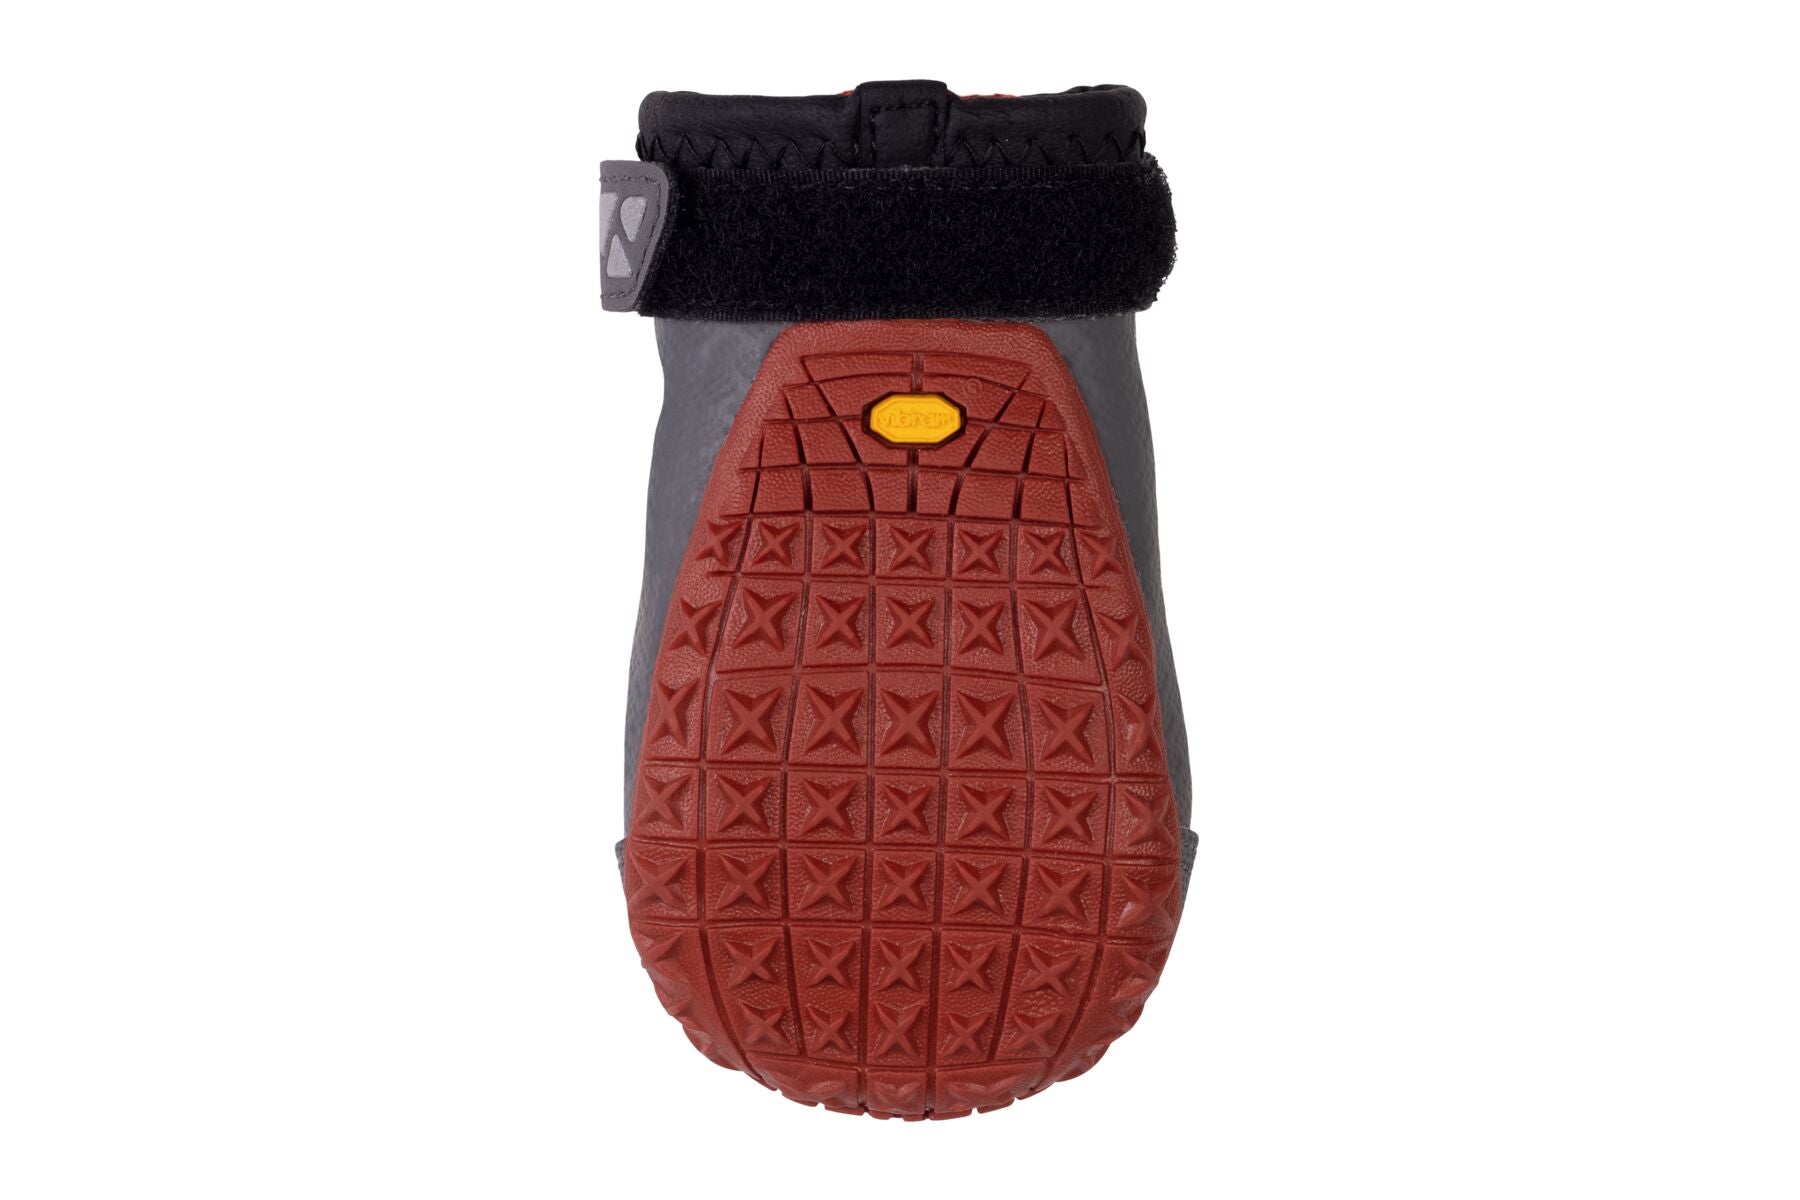 Botas para Perros Grip Trex™ de Ruffwear en Rojo (Red Sumac)(PAR DE BOTAS / 2 BOTAS)